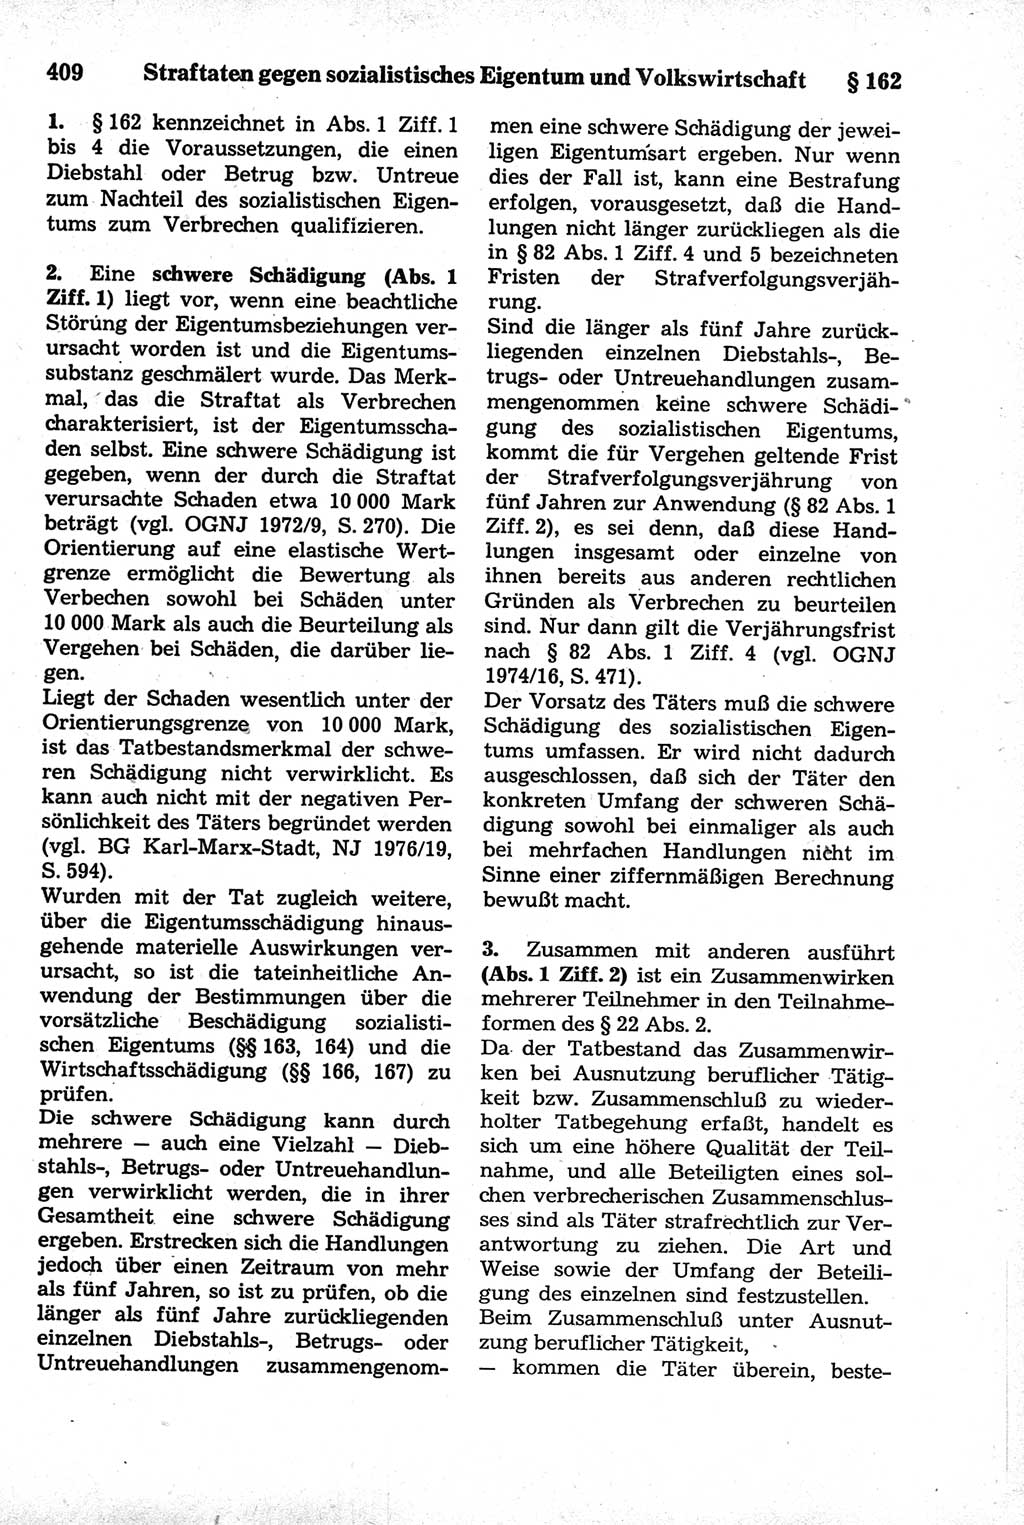 Strafrecht der Deutschen Demokratischen Republik (DDR), Kommentar zum Strafgesetzbuch (StGB) 1981, Seite 409 (Strafr. DDR Komm. StGB 1981, S. 409)